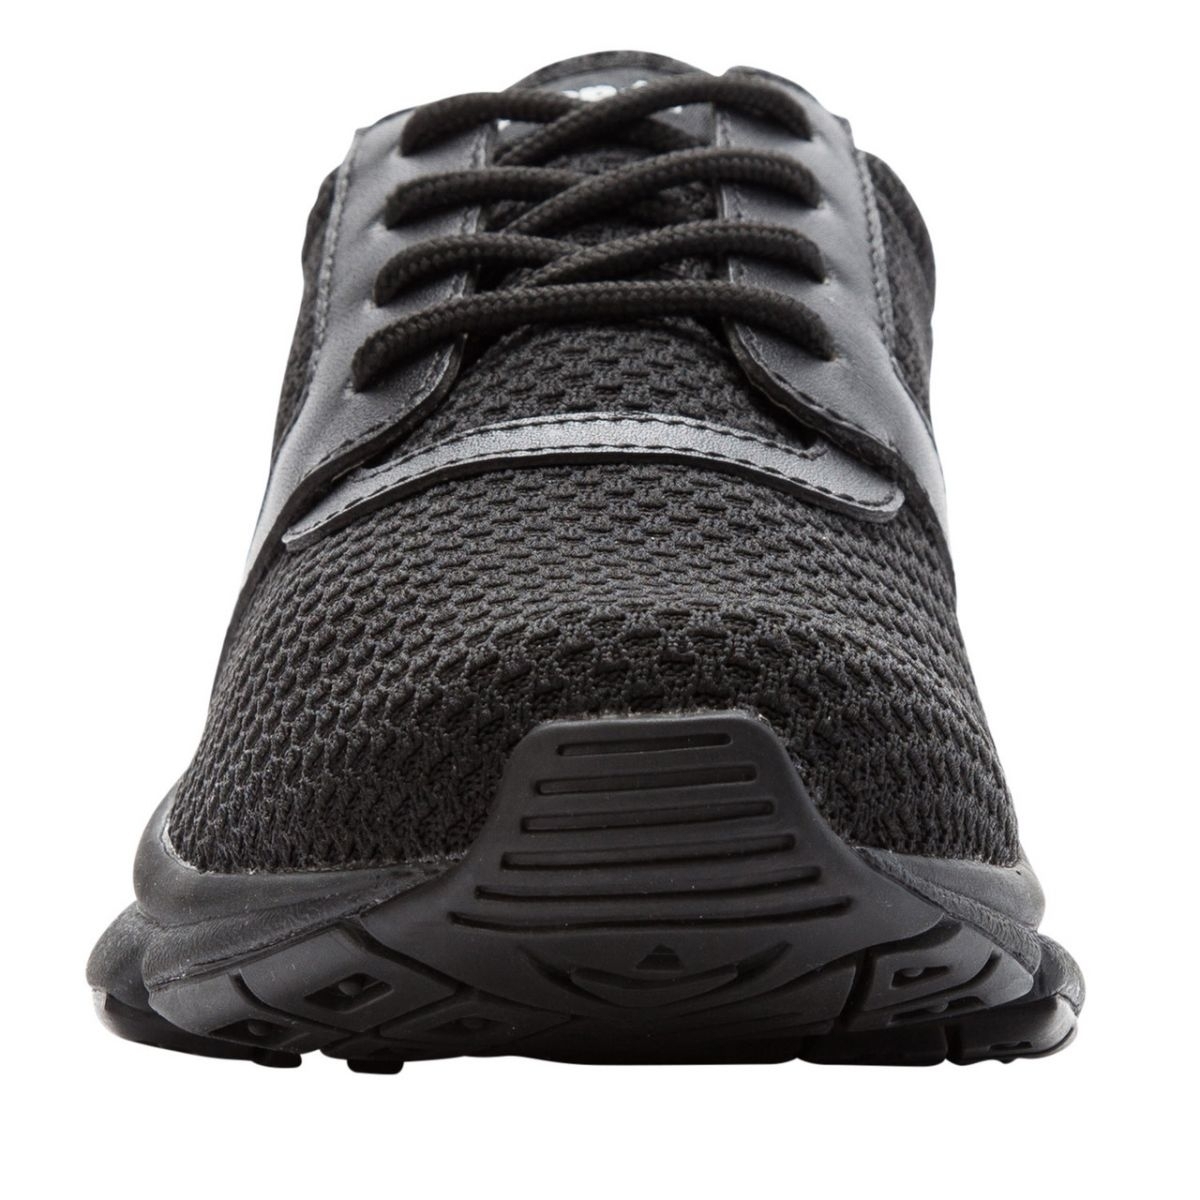 Propet Women's Stability X Walking Shoe Black - WAA032MBLK BLACK - BLACK, 12 Wide